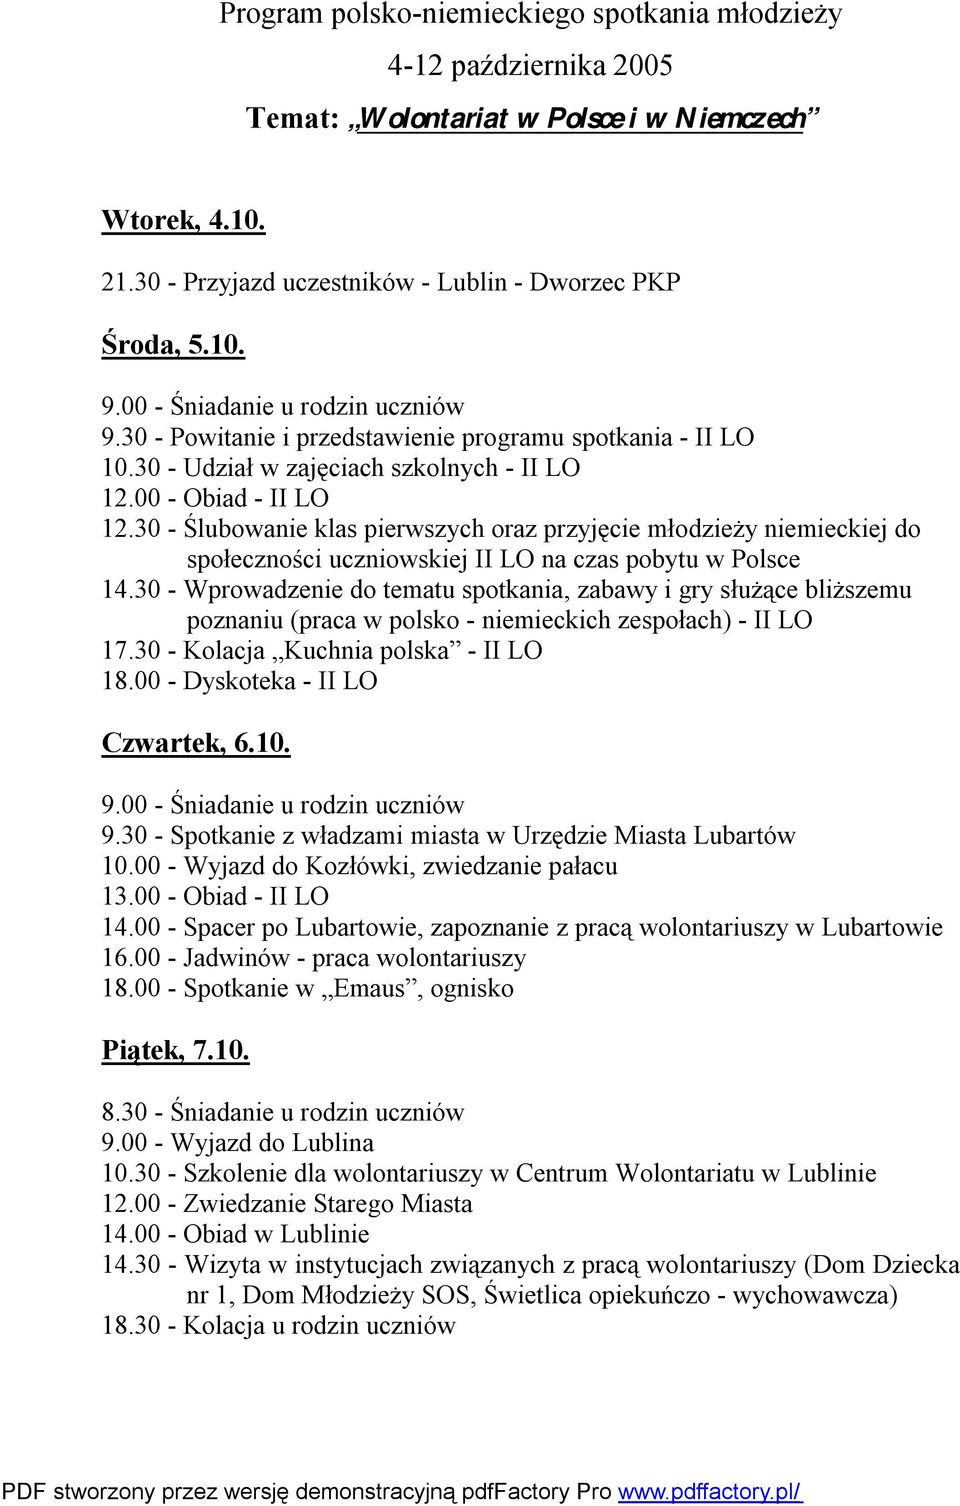 30 - Ślubowanie klas pierwszych oraz przyjęcie młodzieży niemieckiej do społeczności uczniowskiej II LO na czas pobytu w Polsce 14.